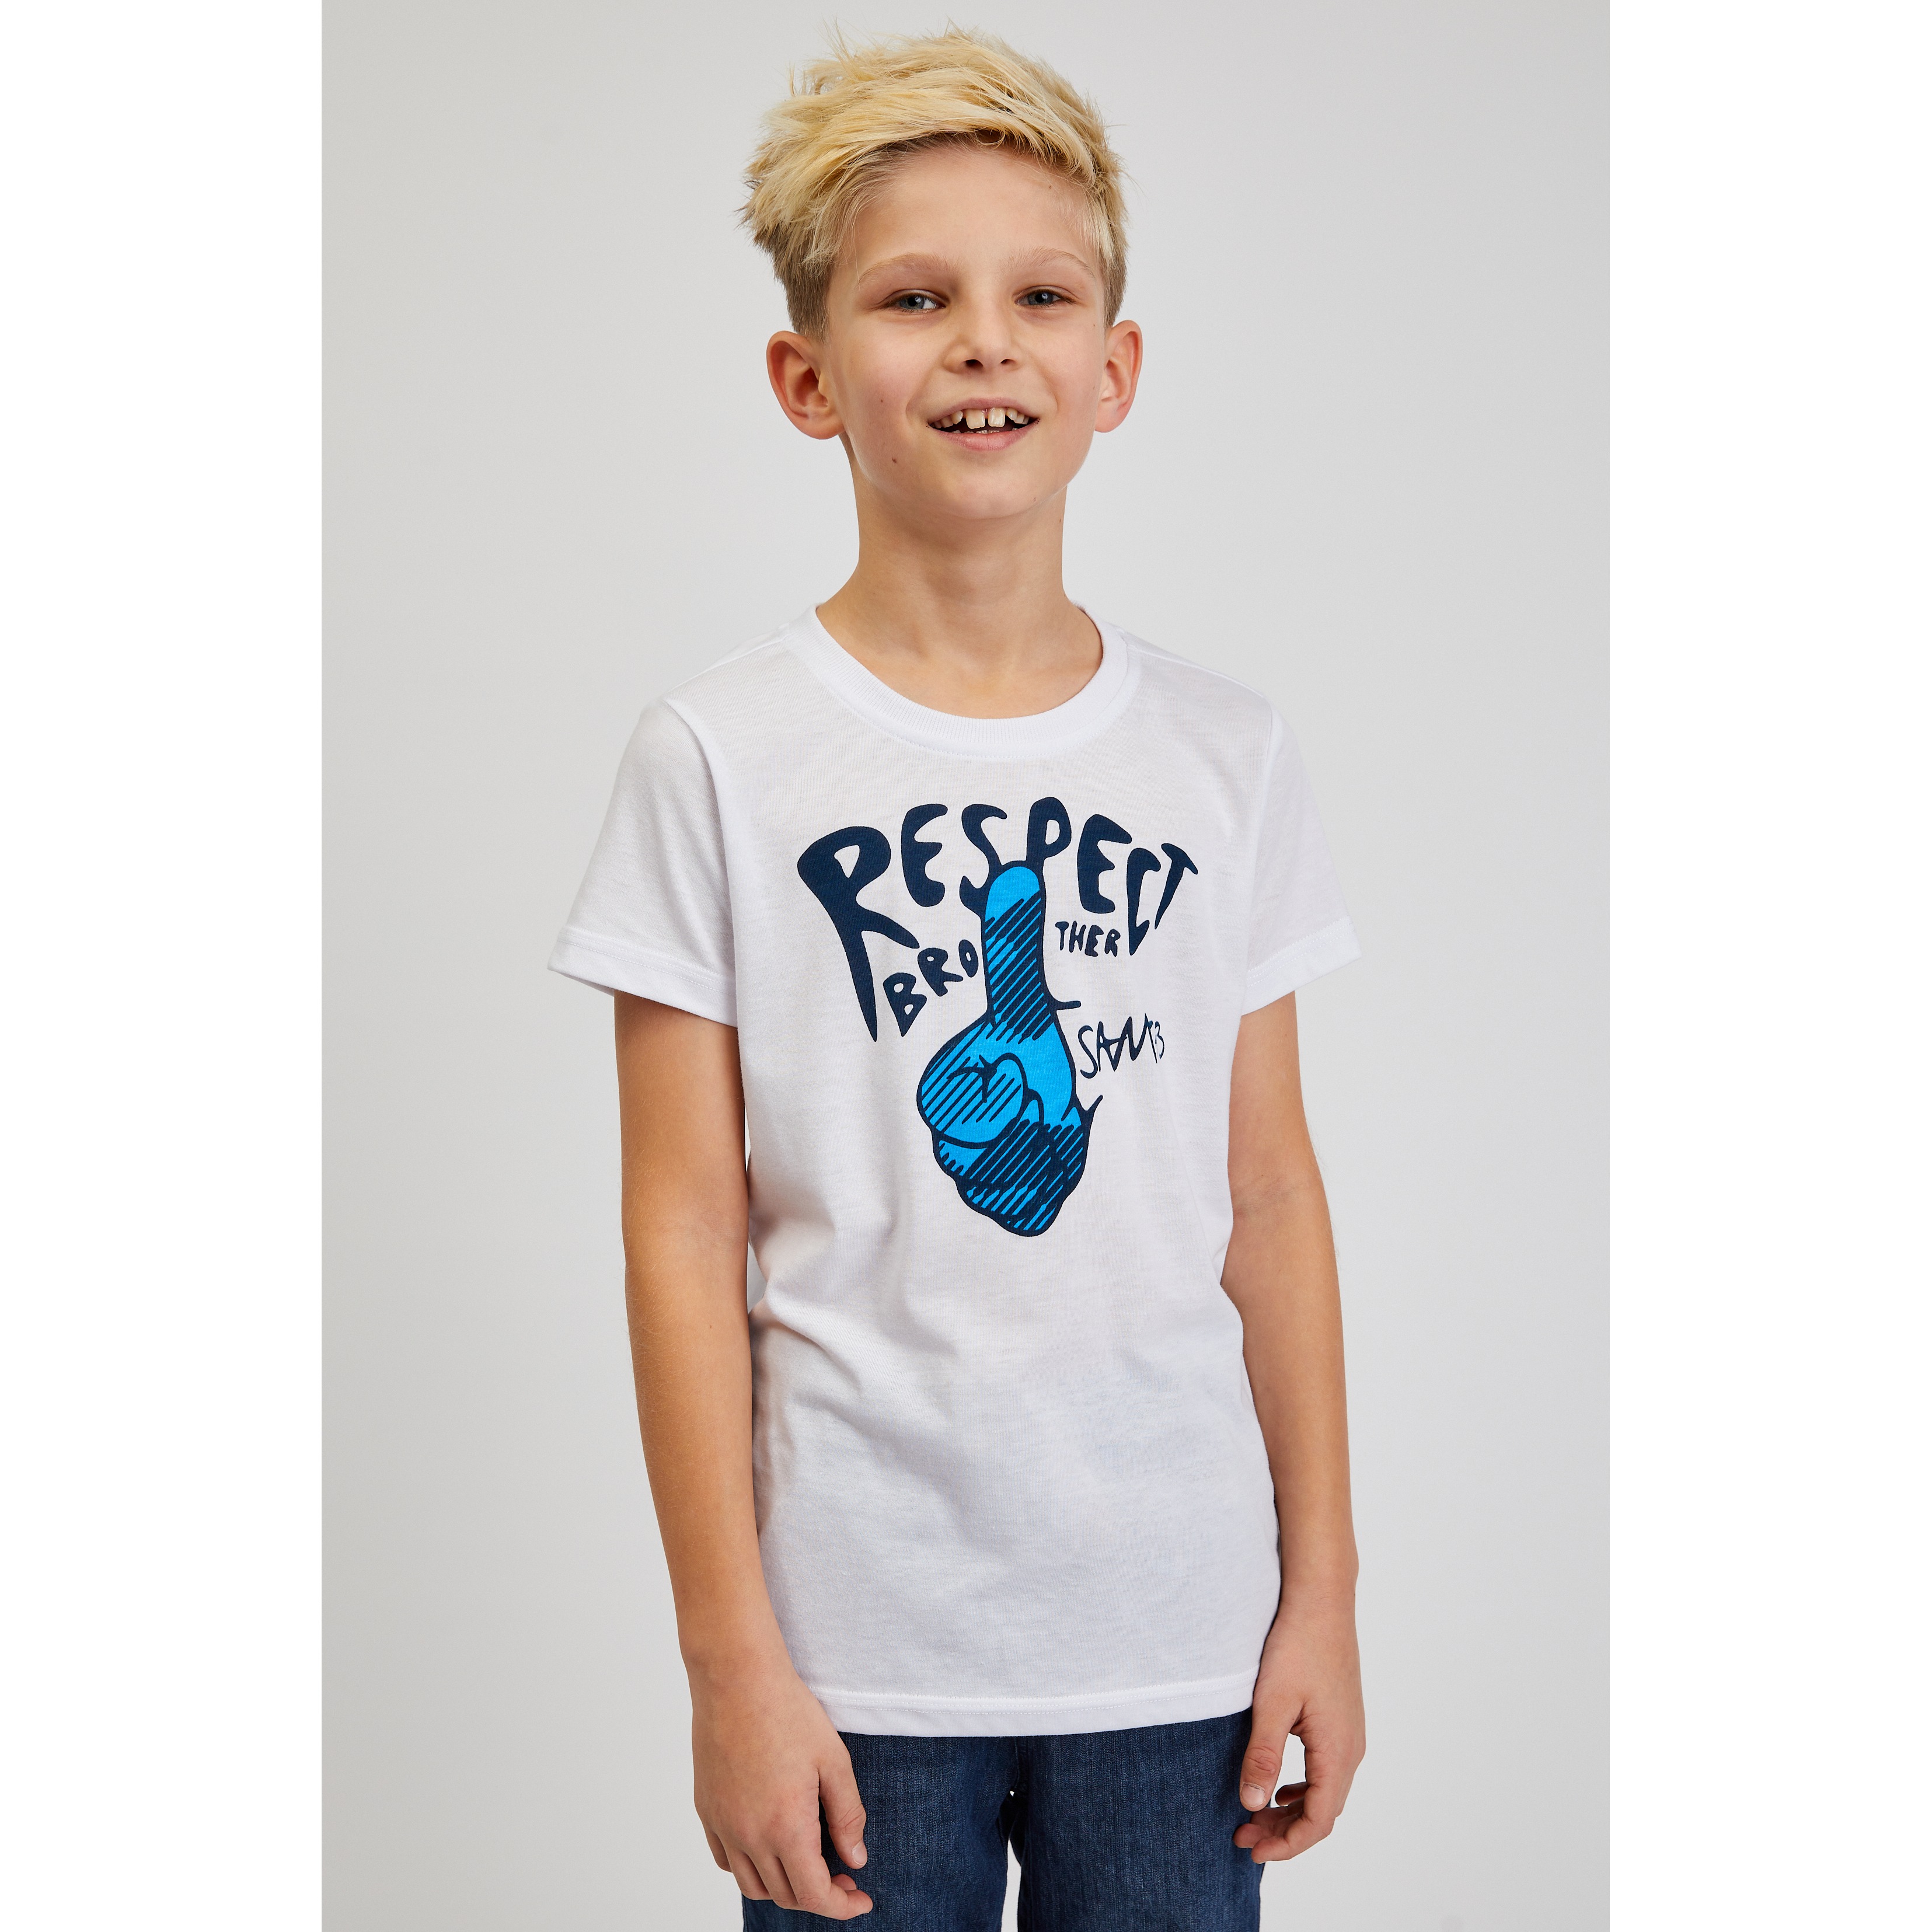 SAM73 Kids T-shirt Scutum - Boys